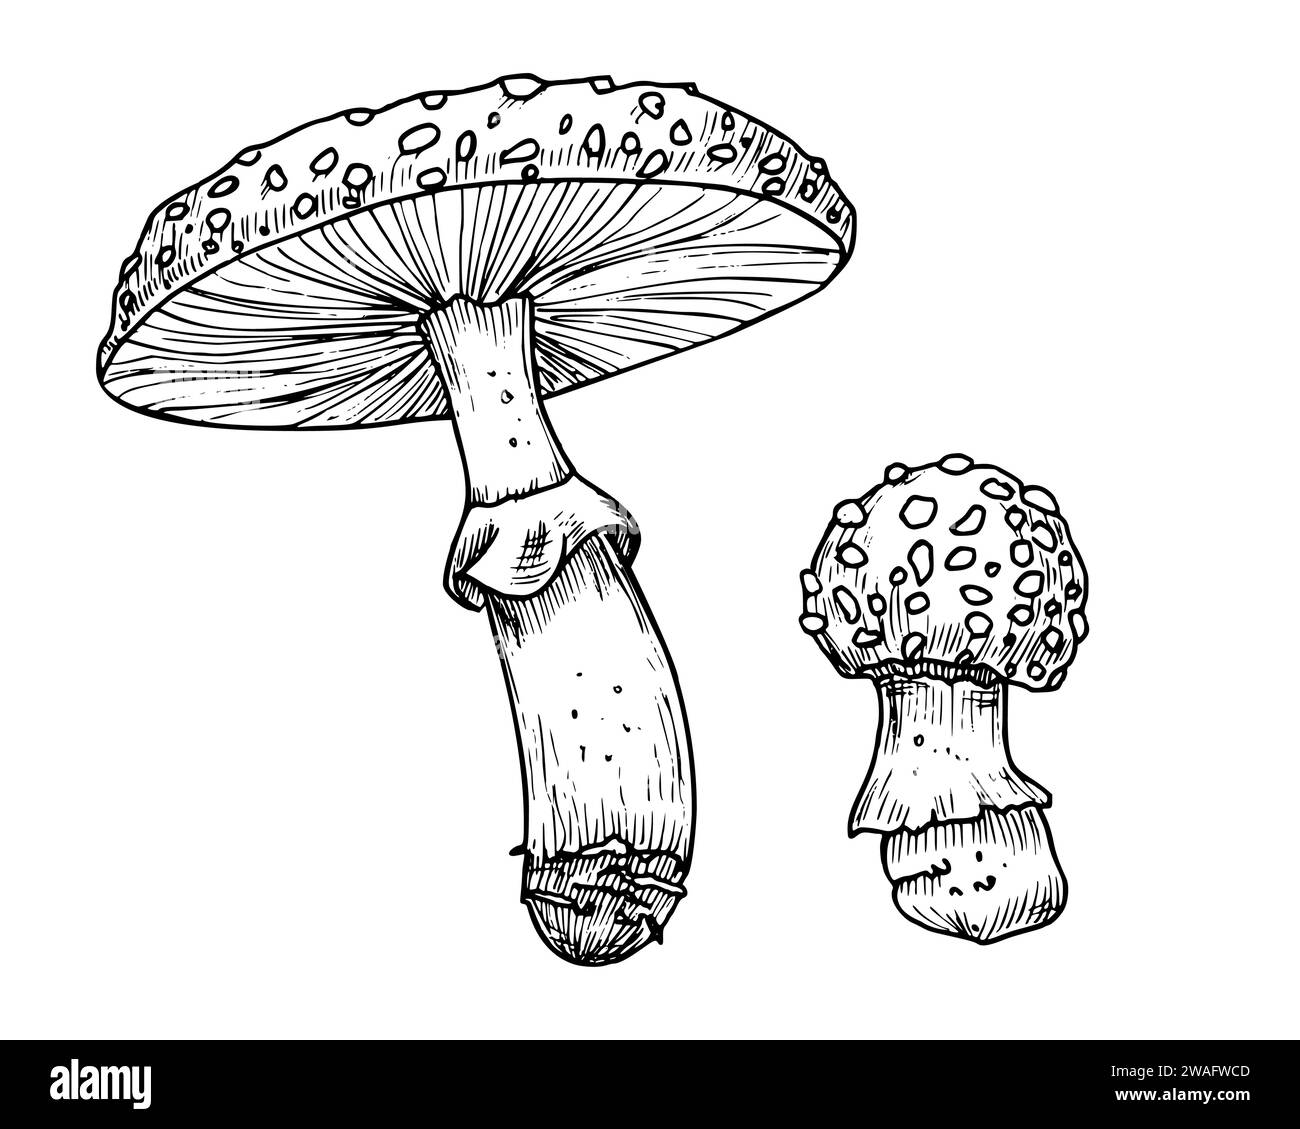 Zeichnung von Fliegenpilz. Handgezeichnete Vektorillustrationen Set von Wald psychedelischen Pilzen in linearer Datei. Skizze des Zauberpilzes, in Schwarz-weiß-Farben gemalt. Skizze der Waldpflanze. Stock Vektor